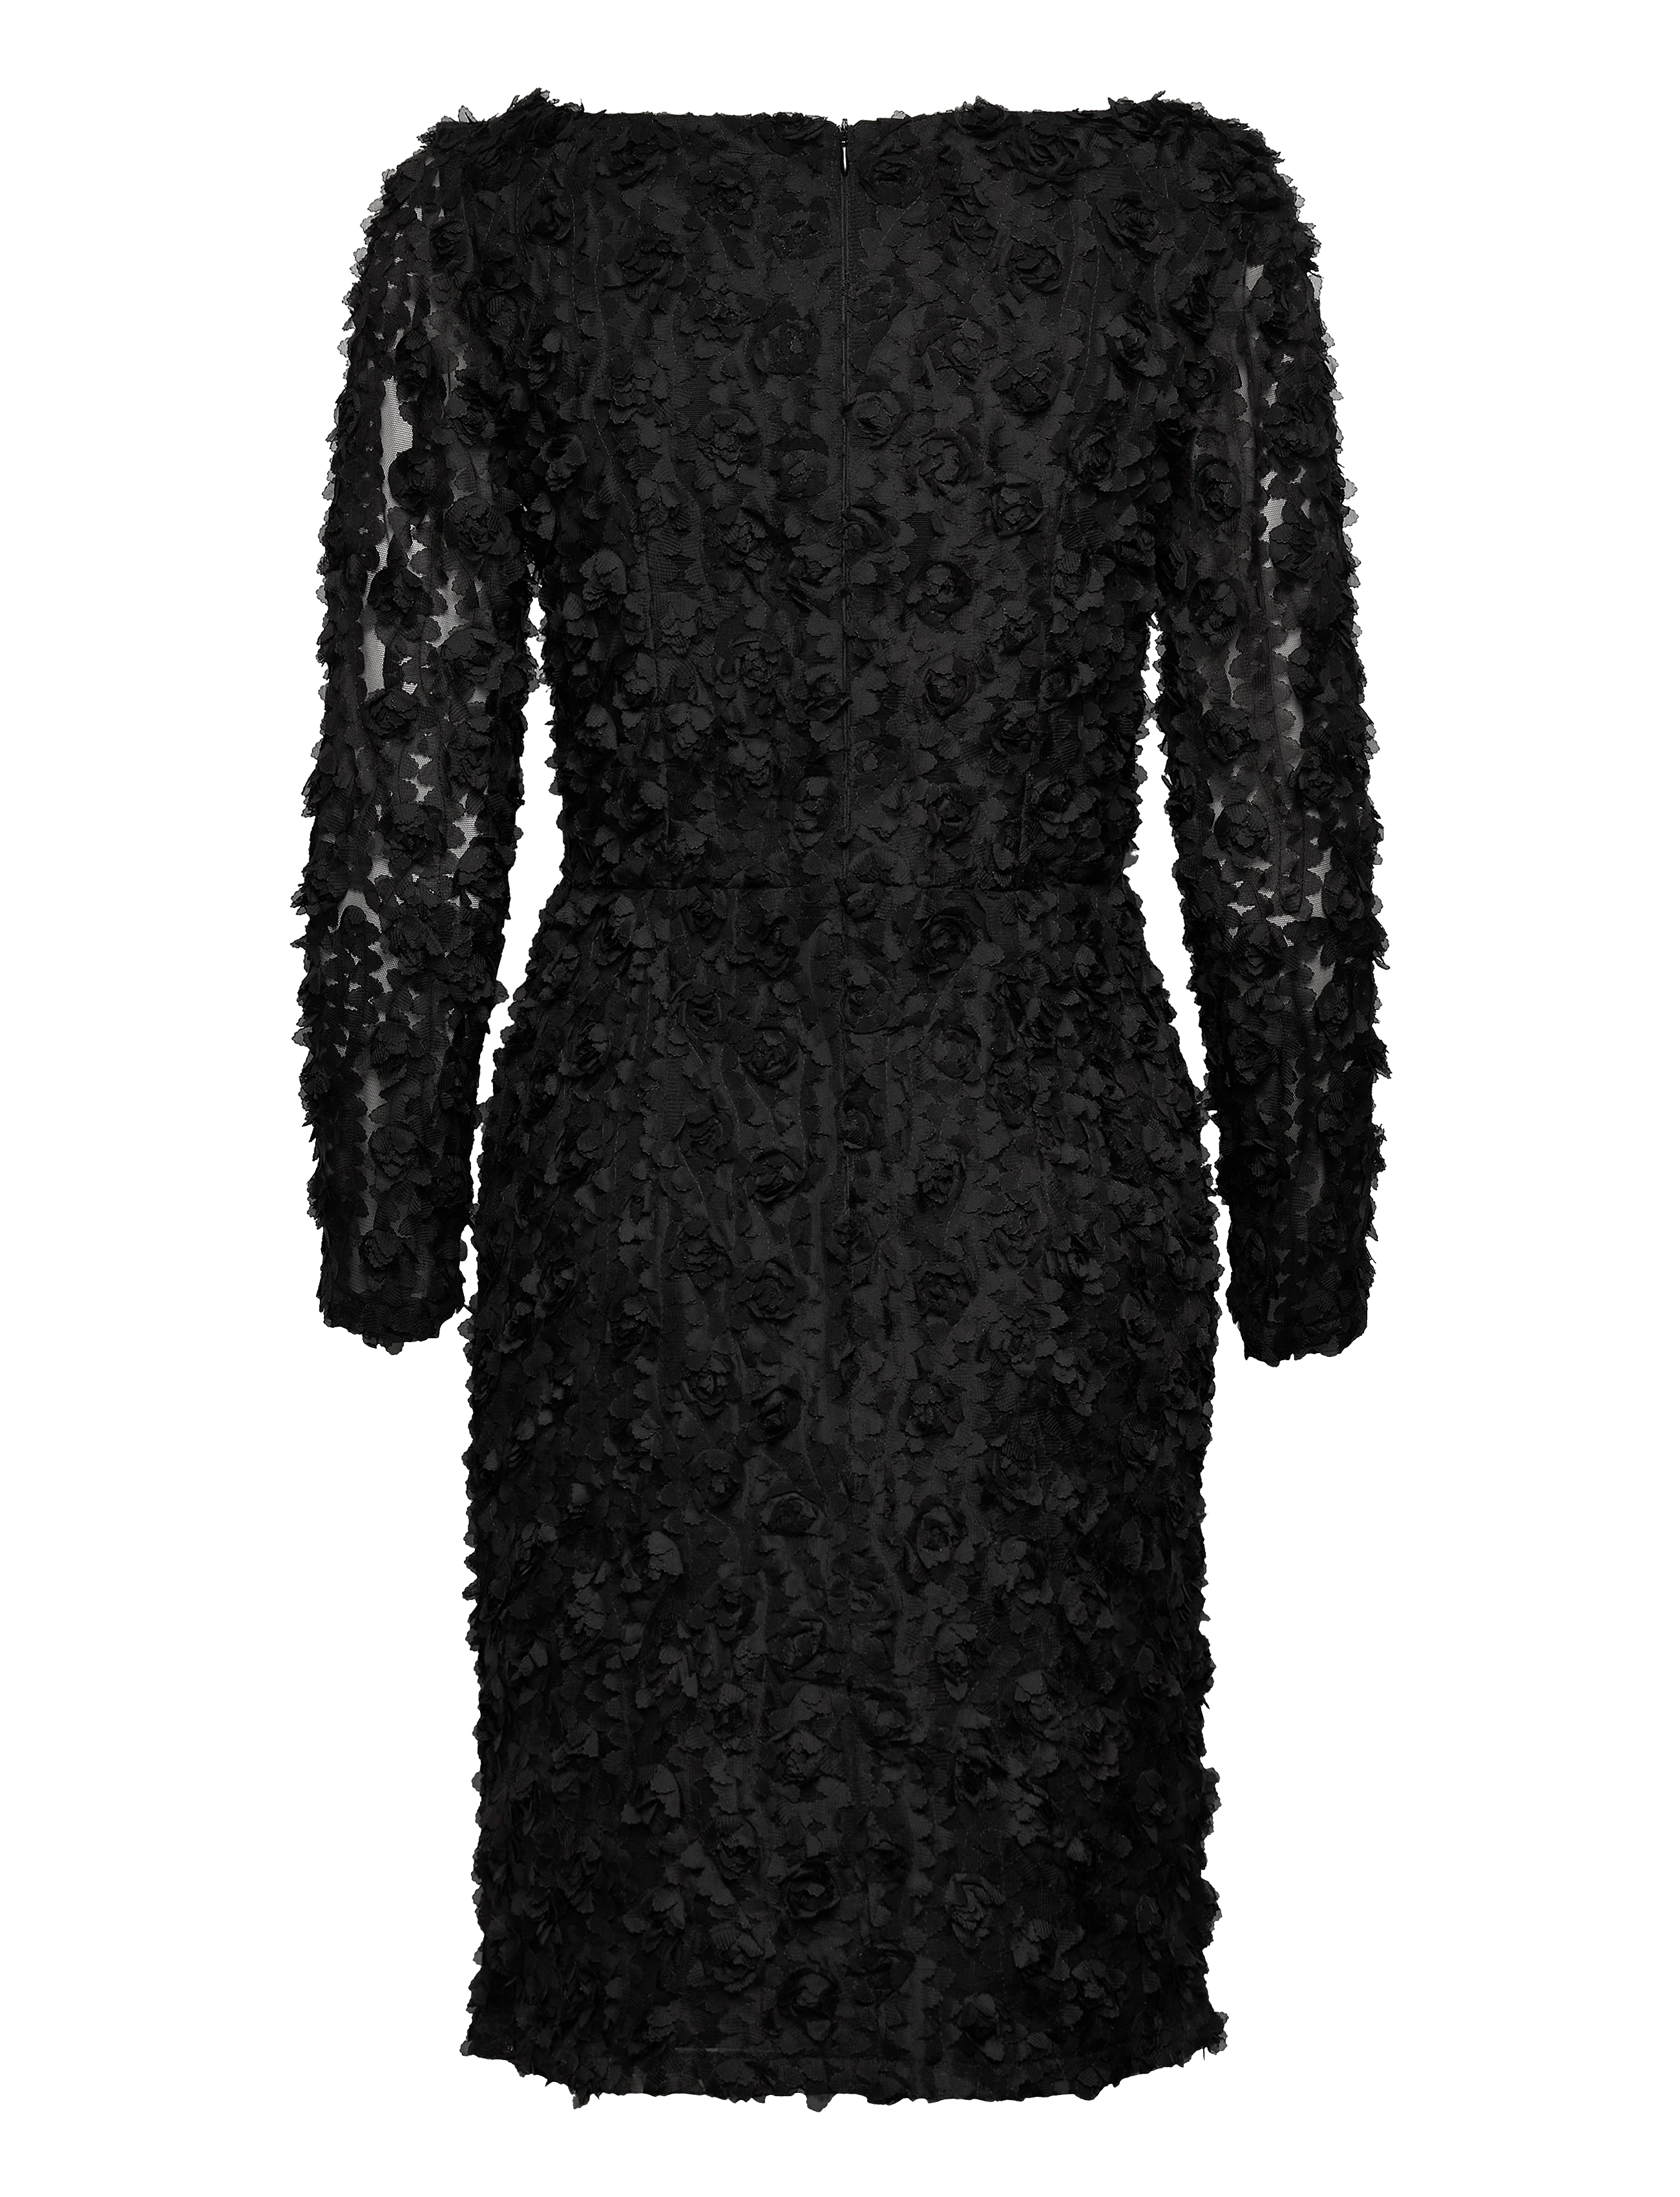 Ida Sjöstedt Whisper Dress Black